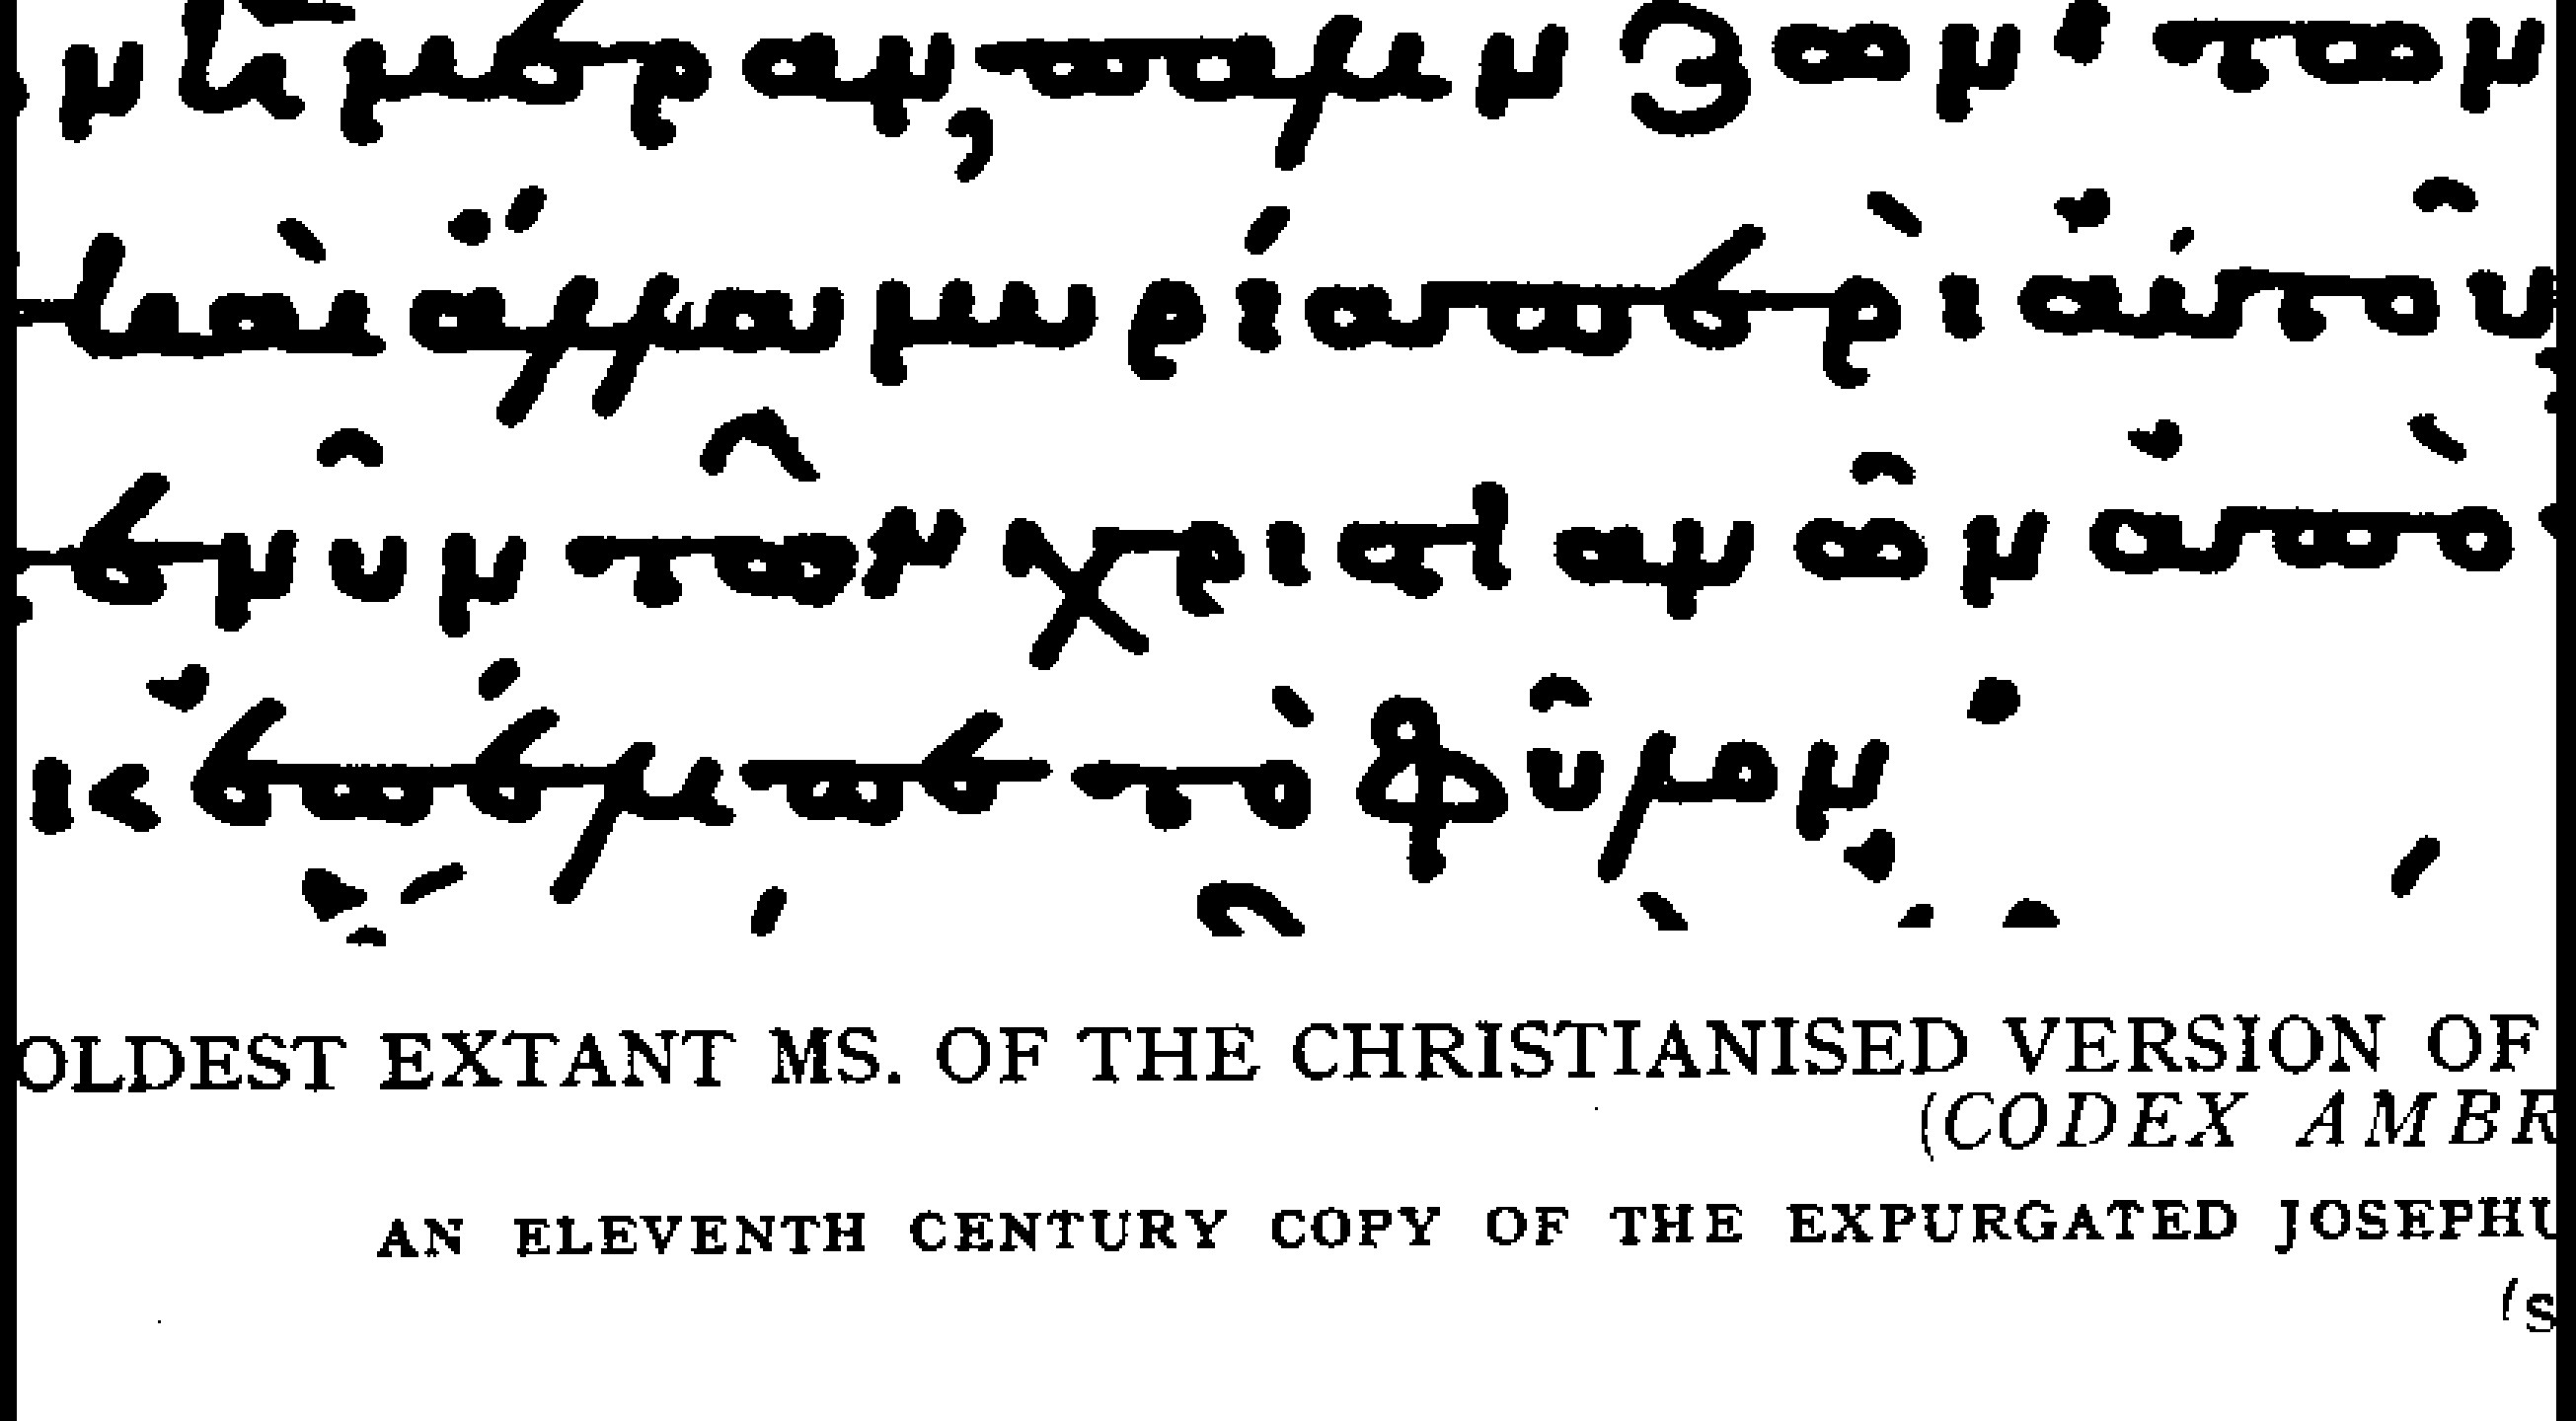 τῶν Χριστιανῶν in Josephus? Impossible